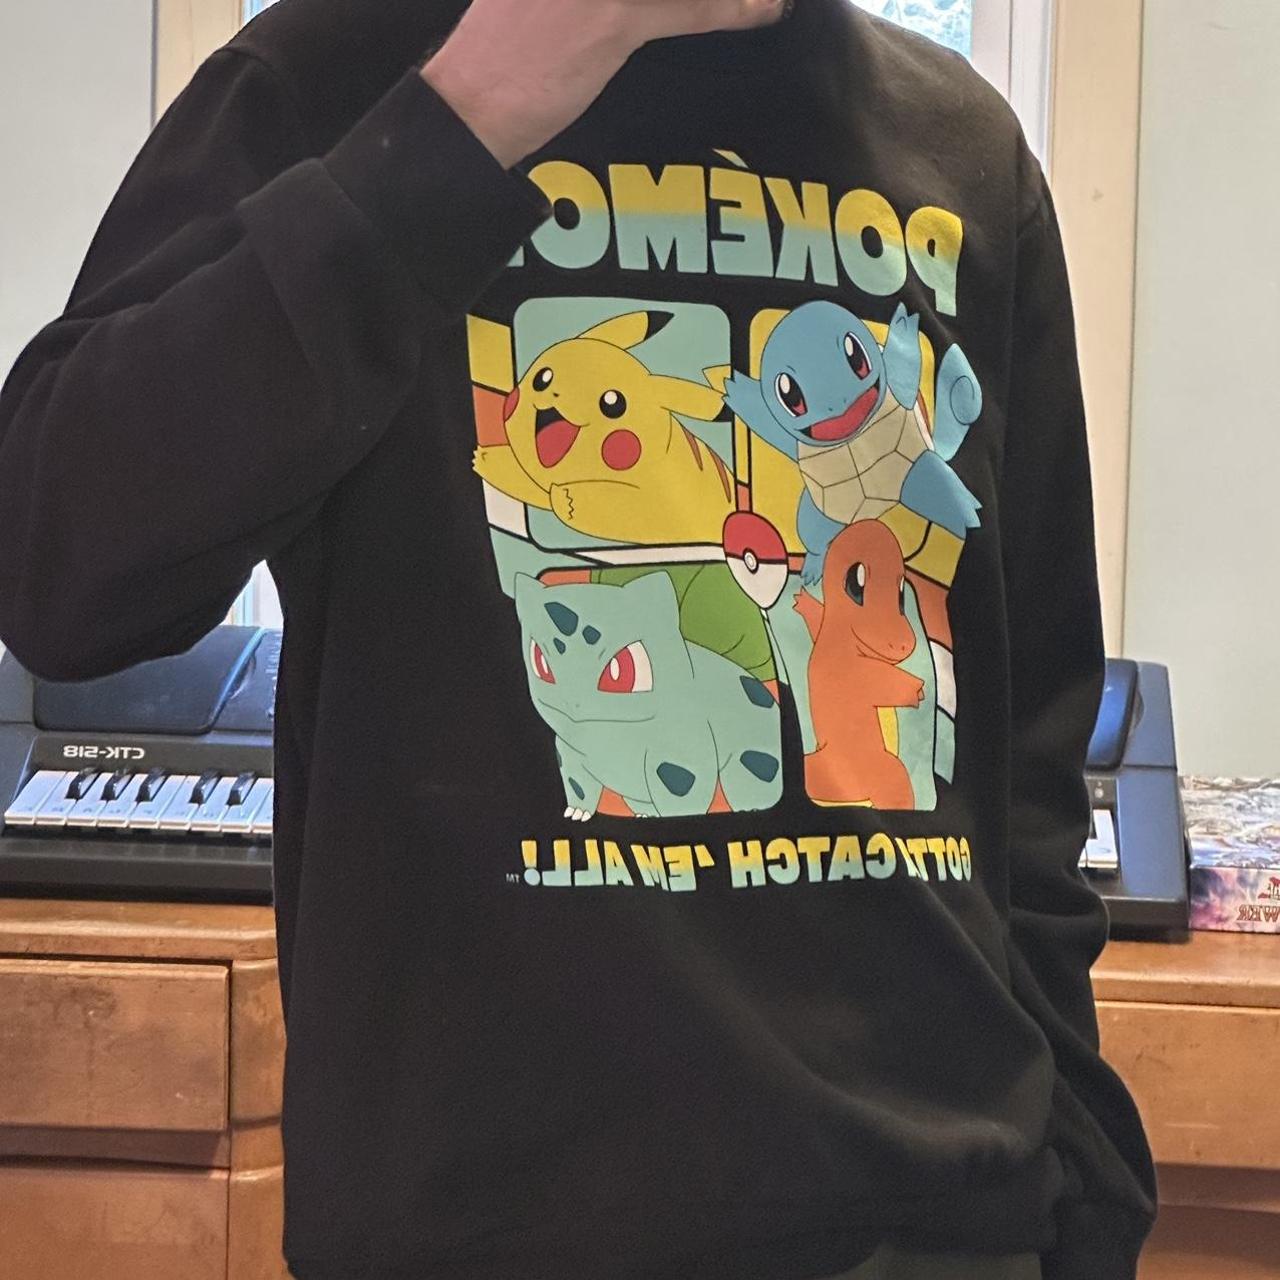 Pokemon sweater - Depop